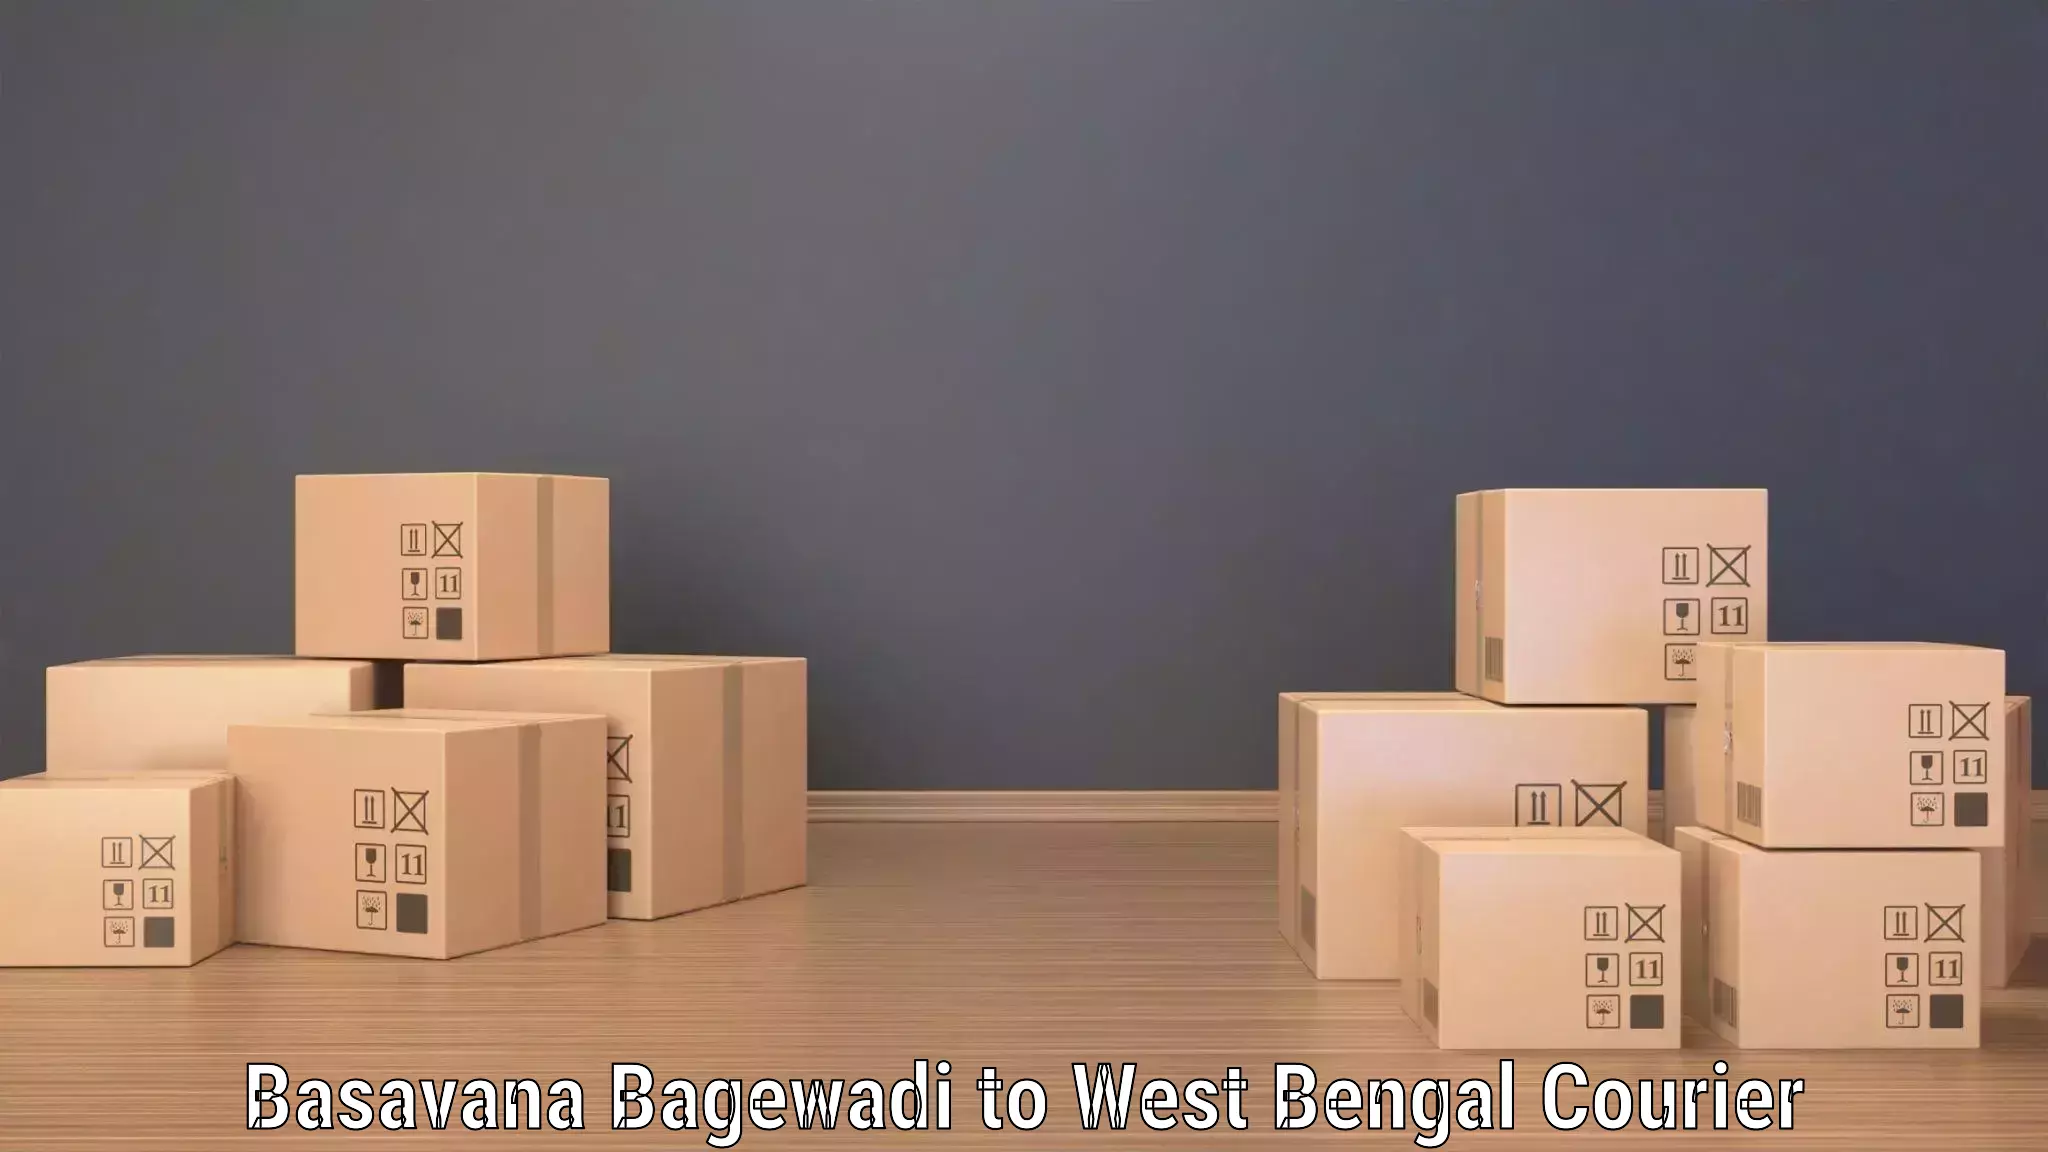 Modern courier technology Basavana Bagewadi to Kolkata